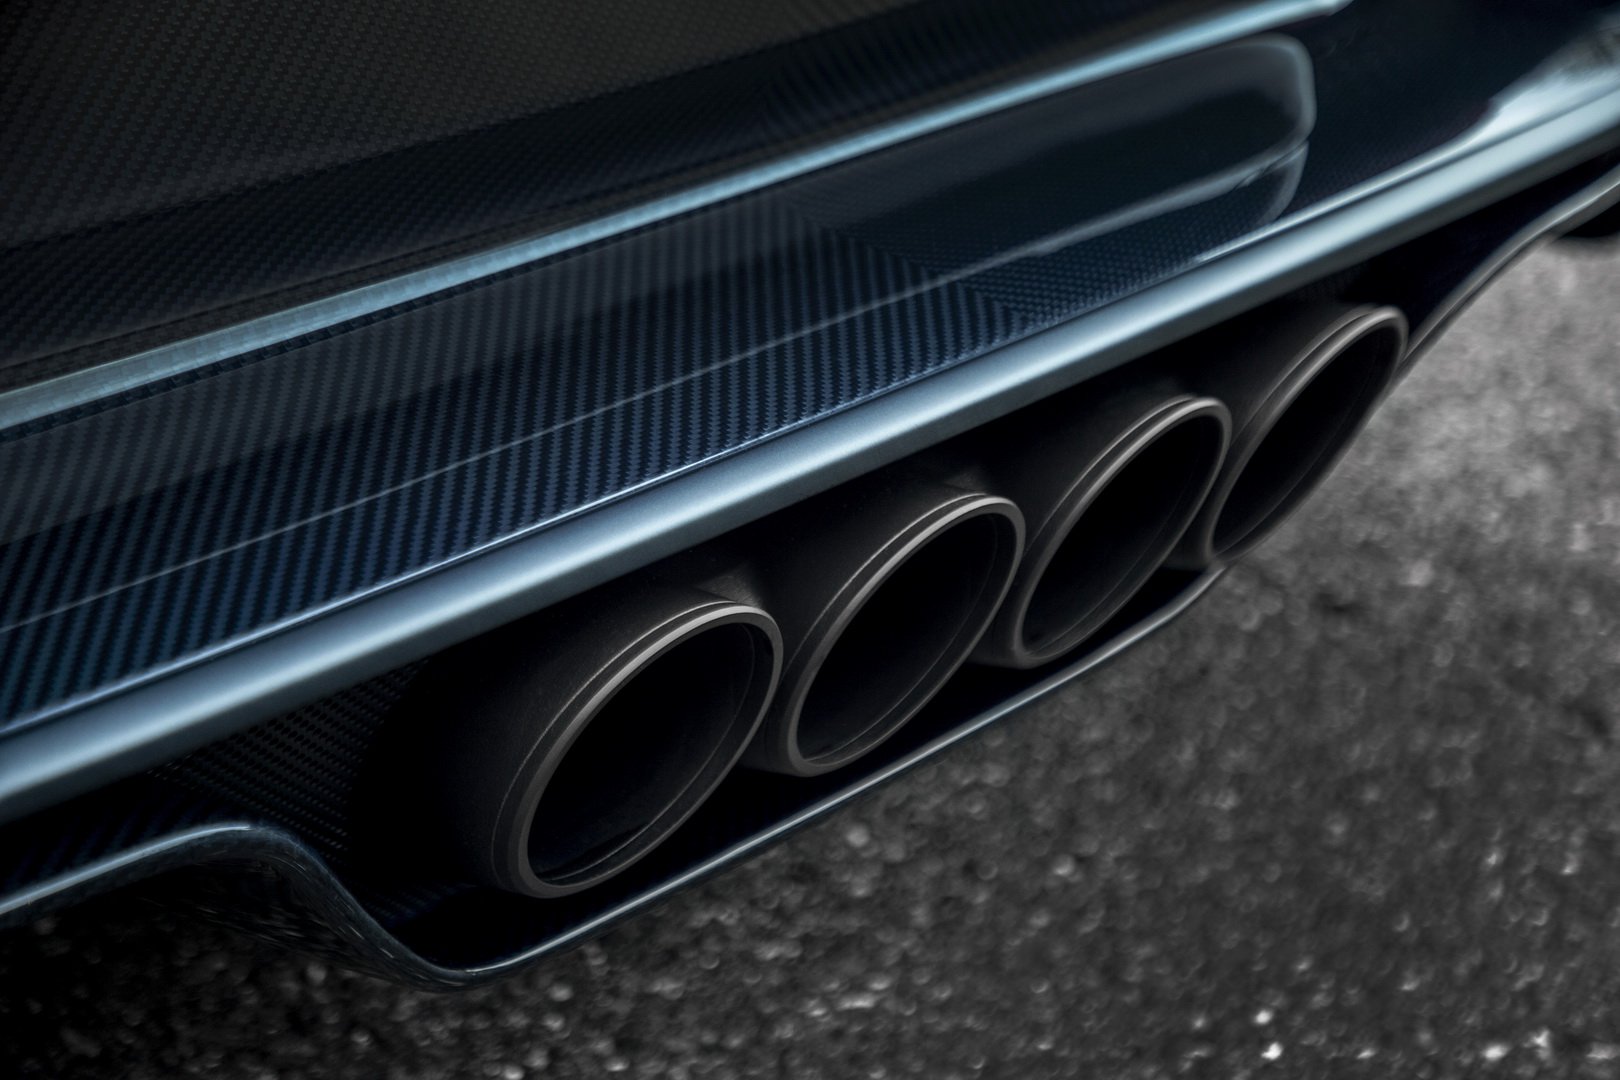 Bugatti Chiron Sport 110 Ans Edition